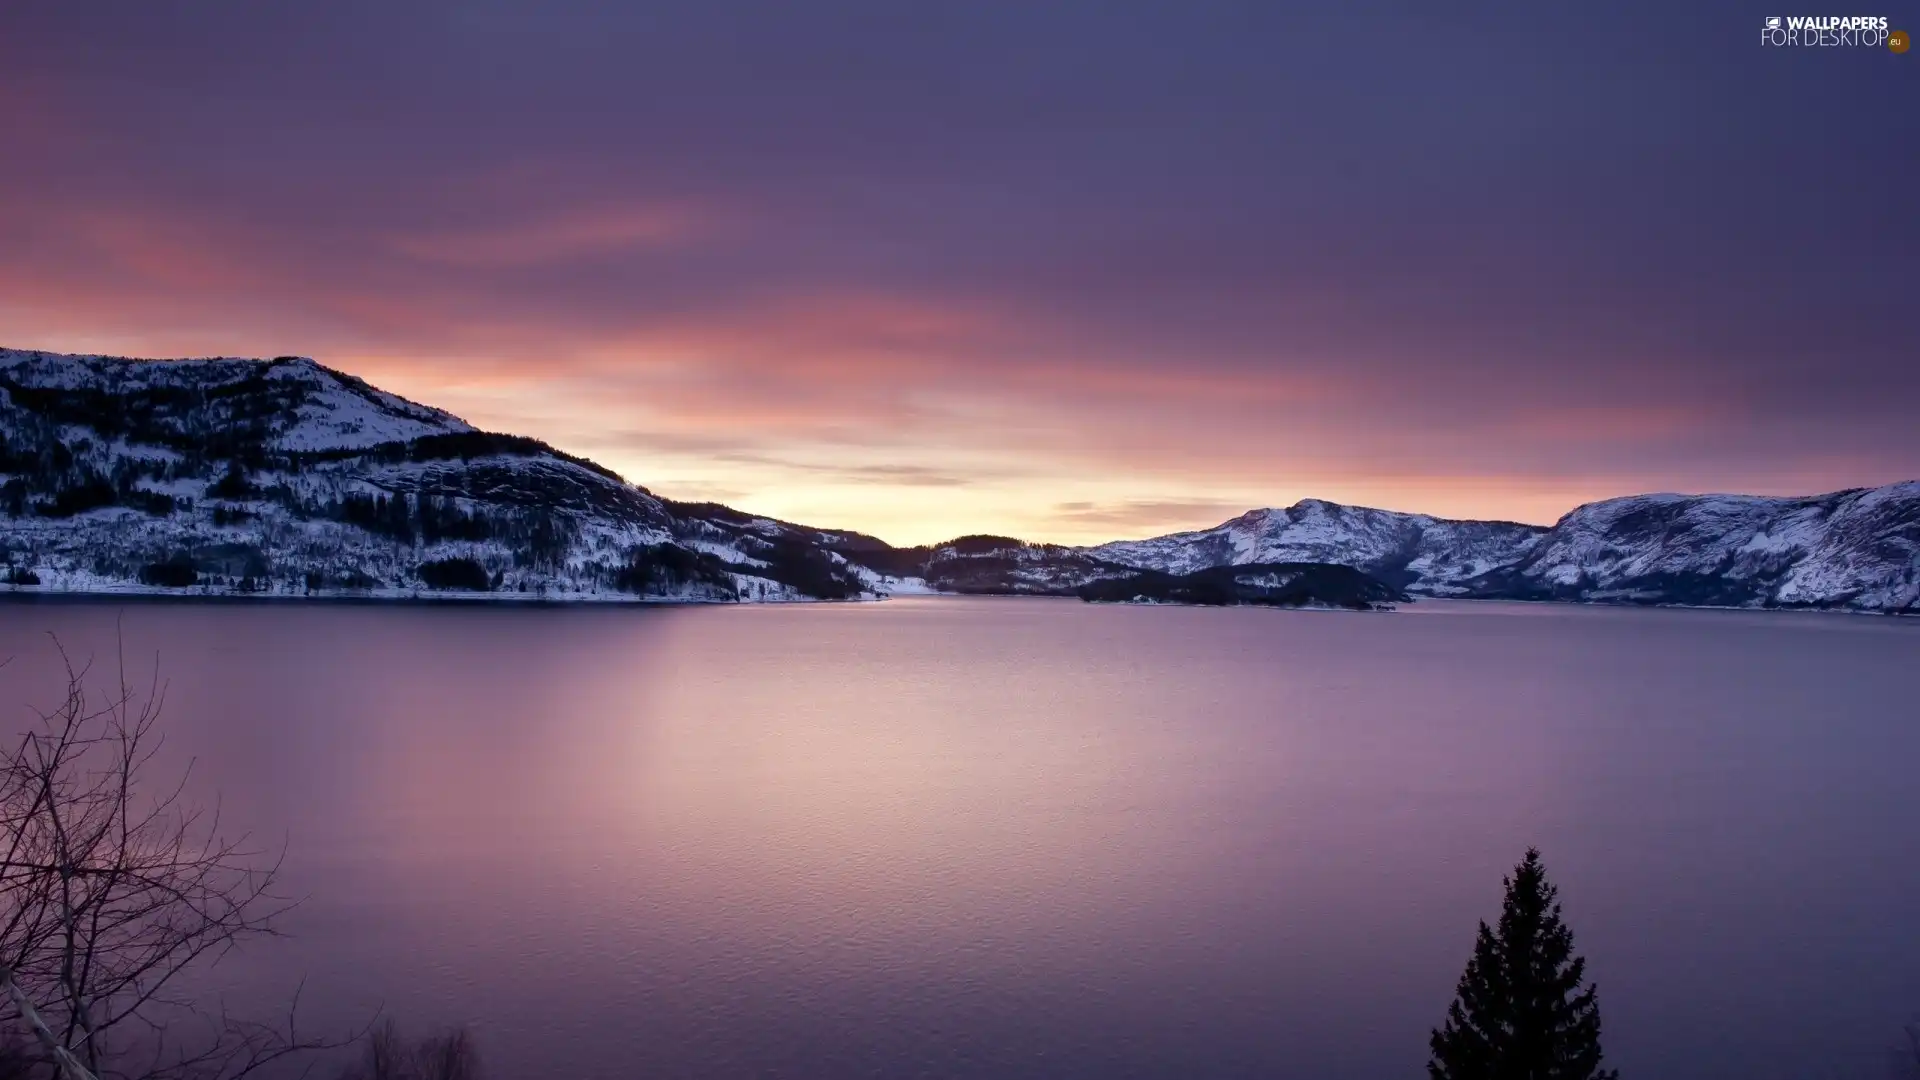 Norway, lake, Mountains